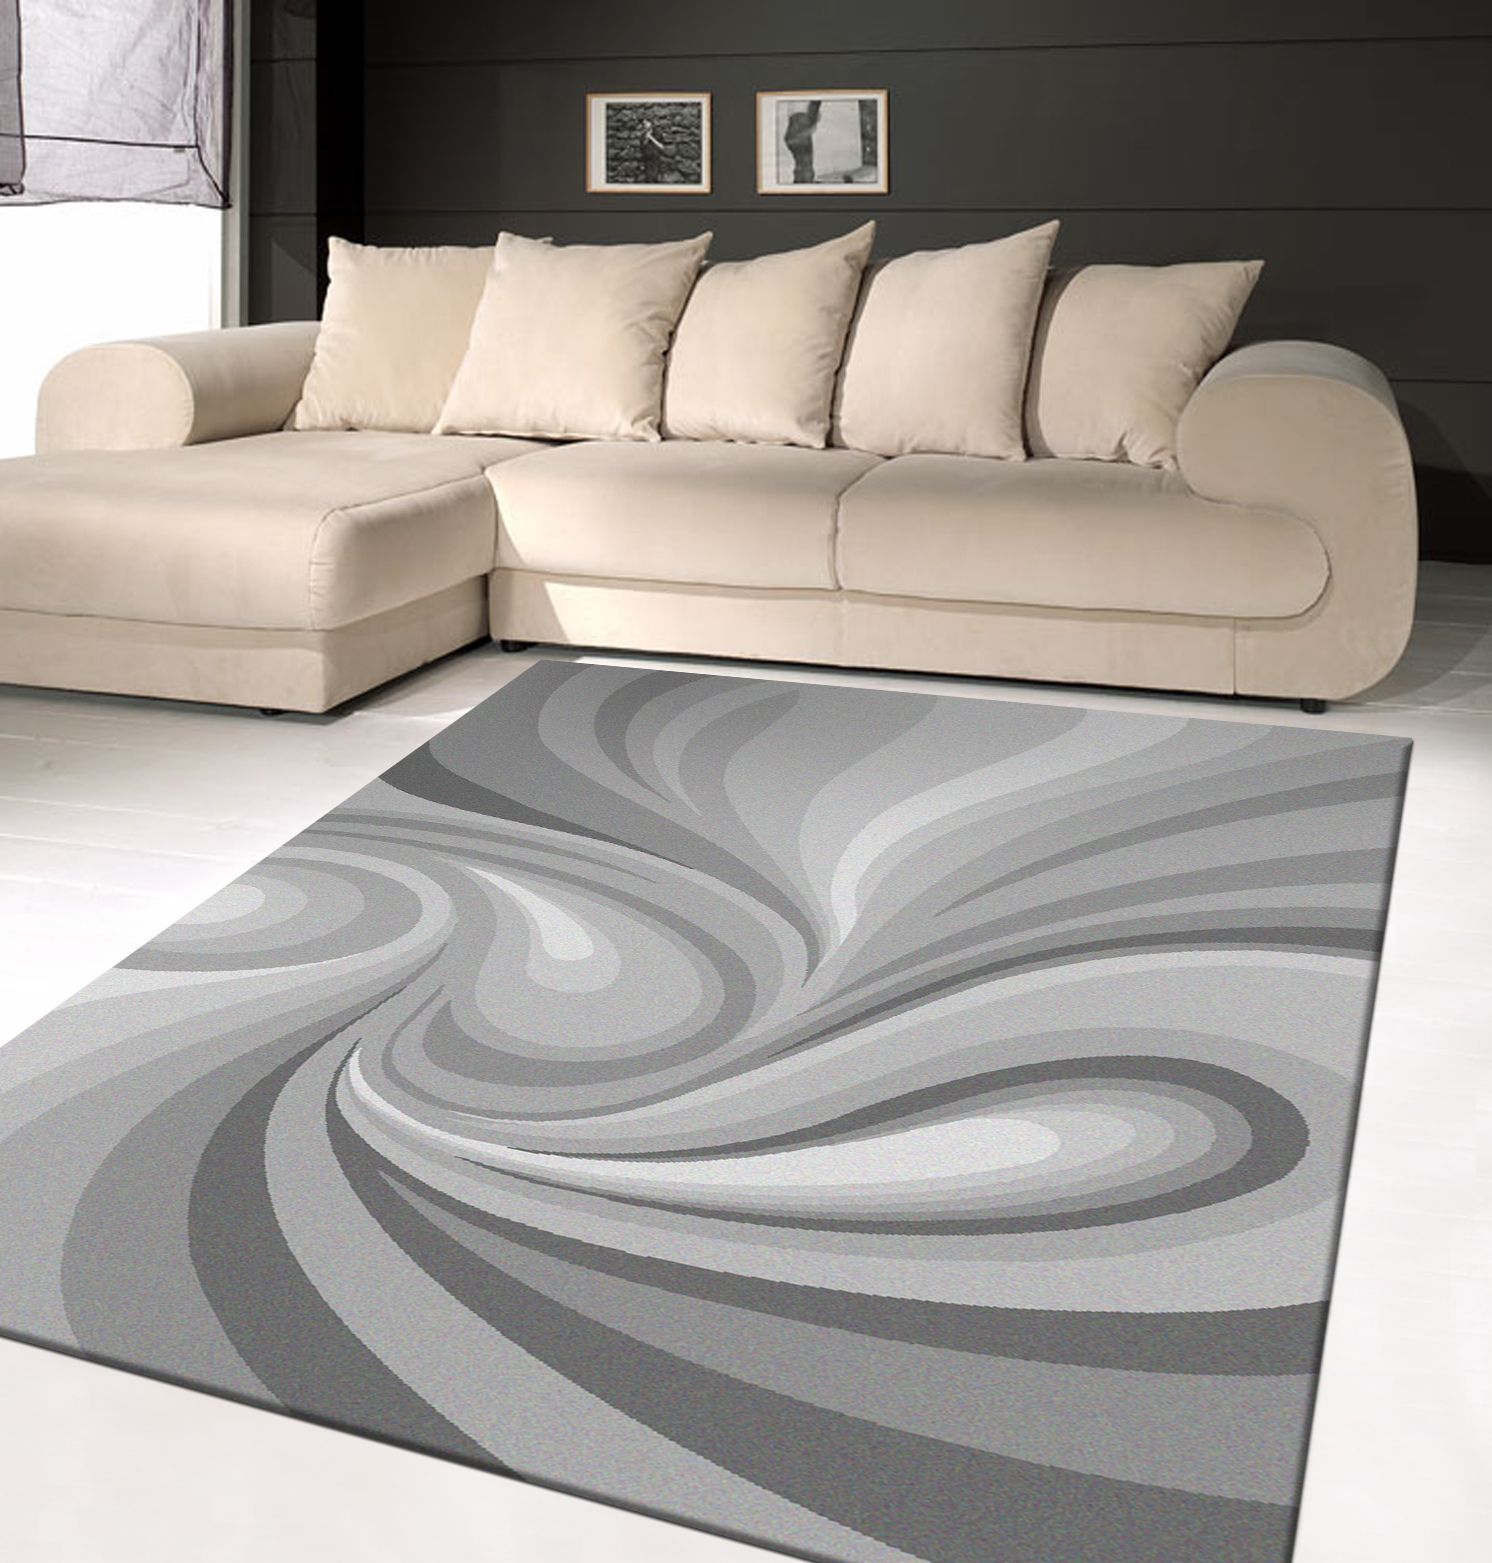 آیا تا به حال به خرید فرش سه بعدی فکر کرده اید